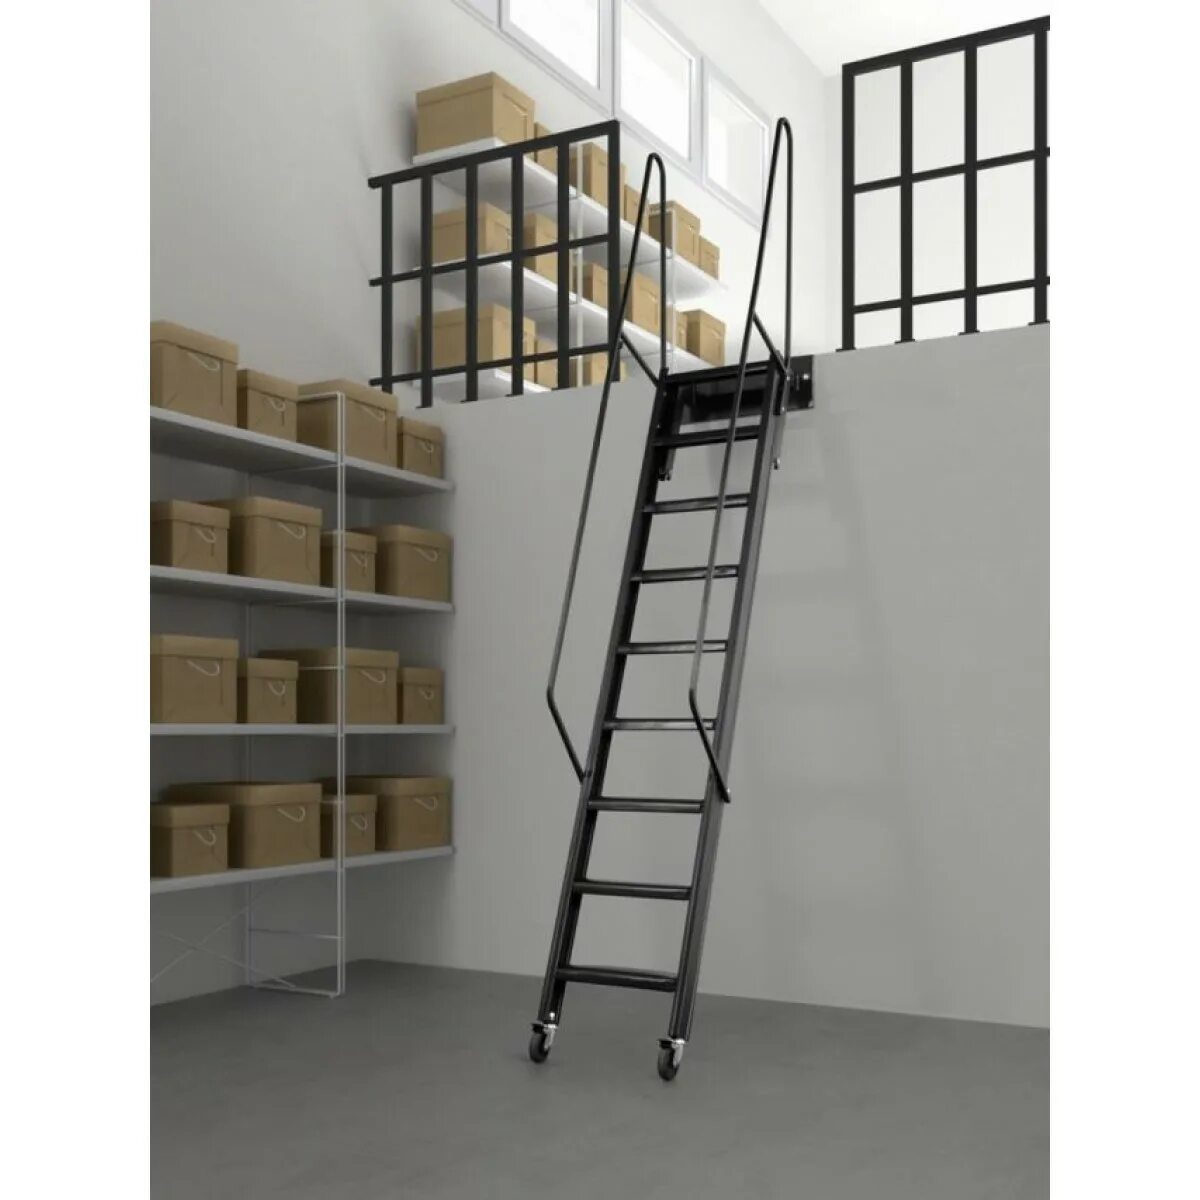 Лестница с зацепами купить. Loft Ladder лестница. Лестница лофт в антресольный этаж. Антресольная приставная лестница Факро. Лестница приставная OMP 55/300.